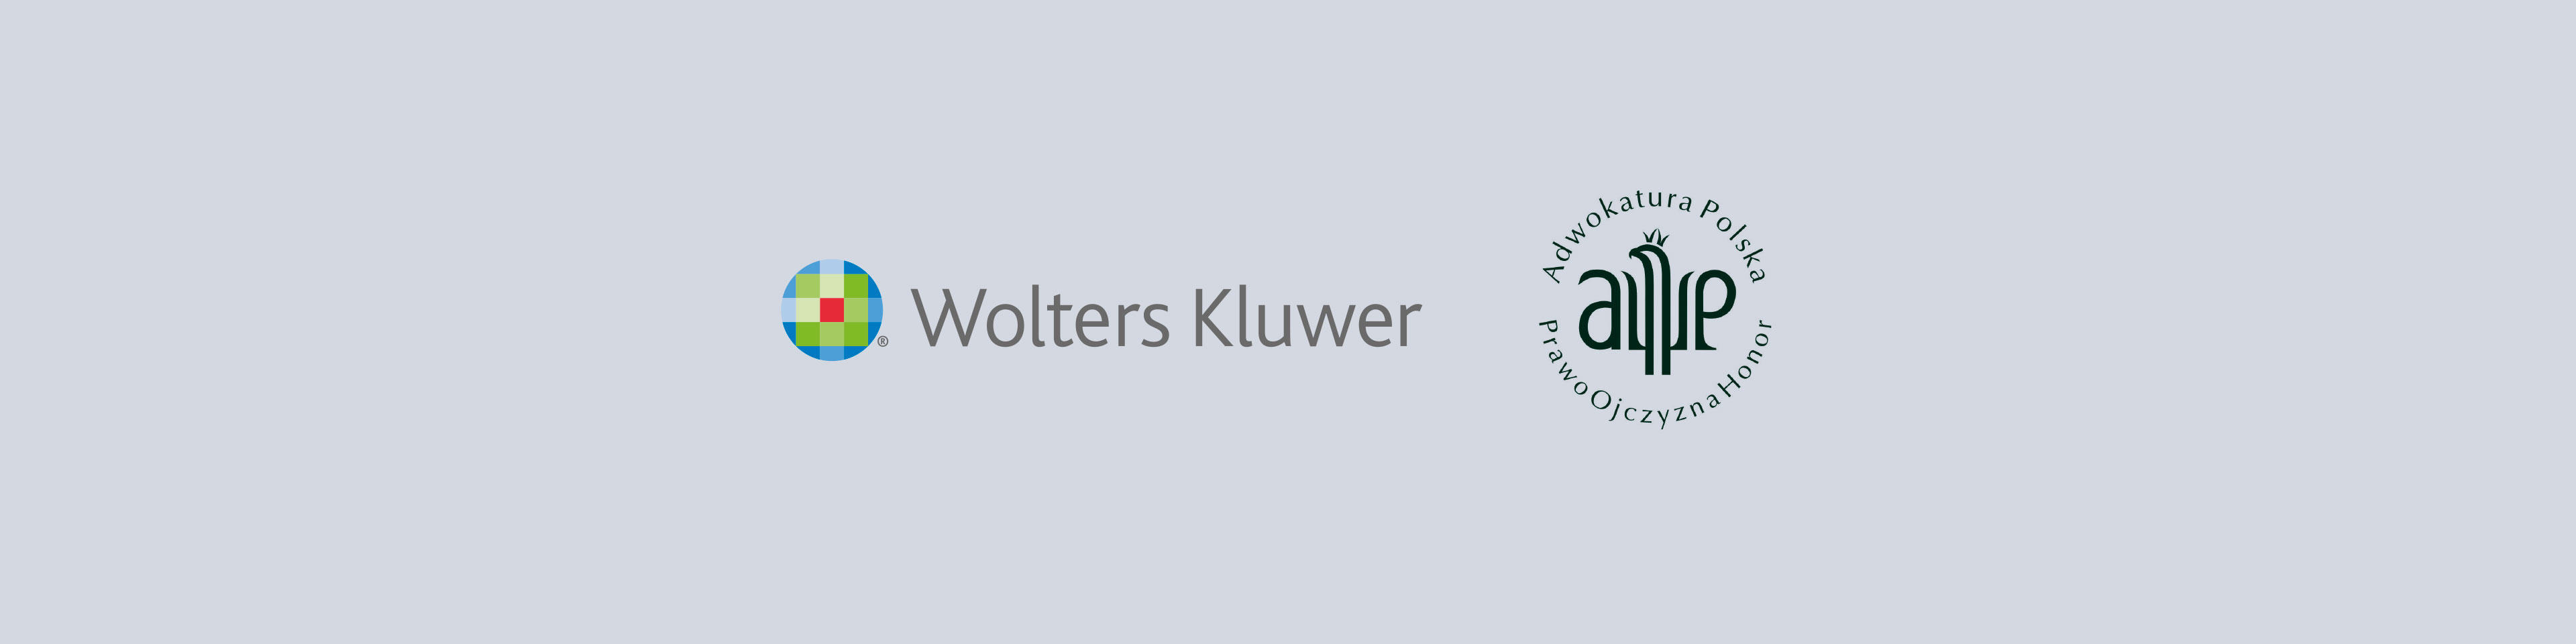 Wolters Kluwer rozwija współpracę z Naczelną Radą Adwokacką